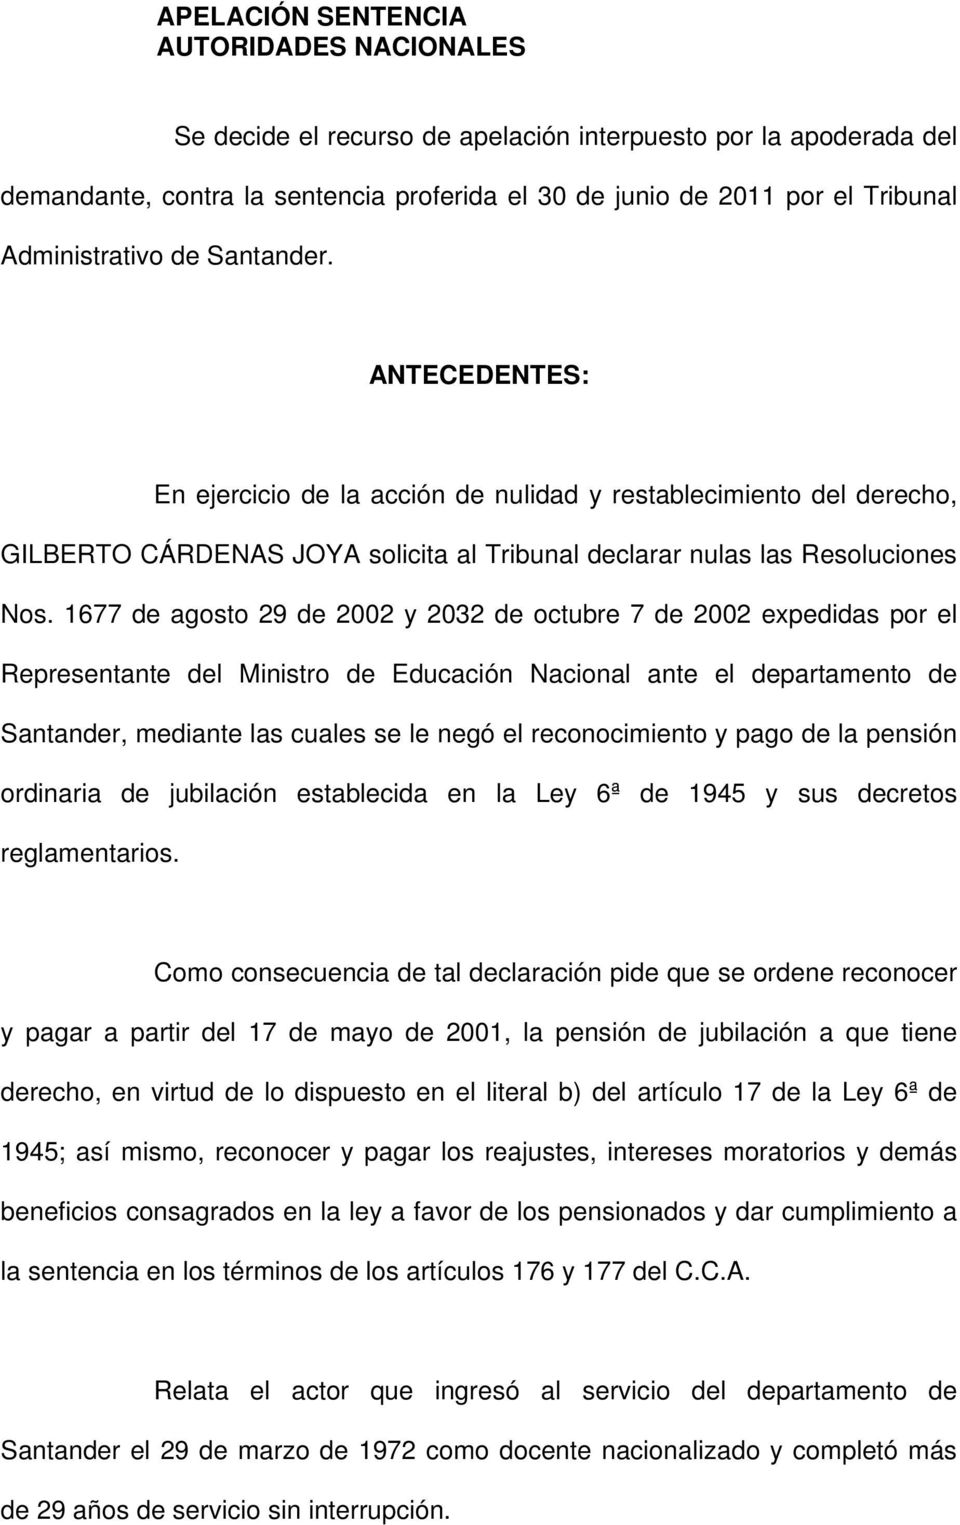 1677 de agosto 29 de 2002 y 2032 de octubre 7 de 2002 expedidas por el Representante del Ministro de Educación Nacional ante el departamento de Santander, mediante las cuales se le negó el